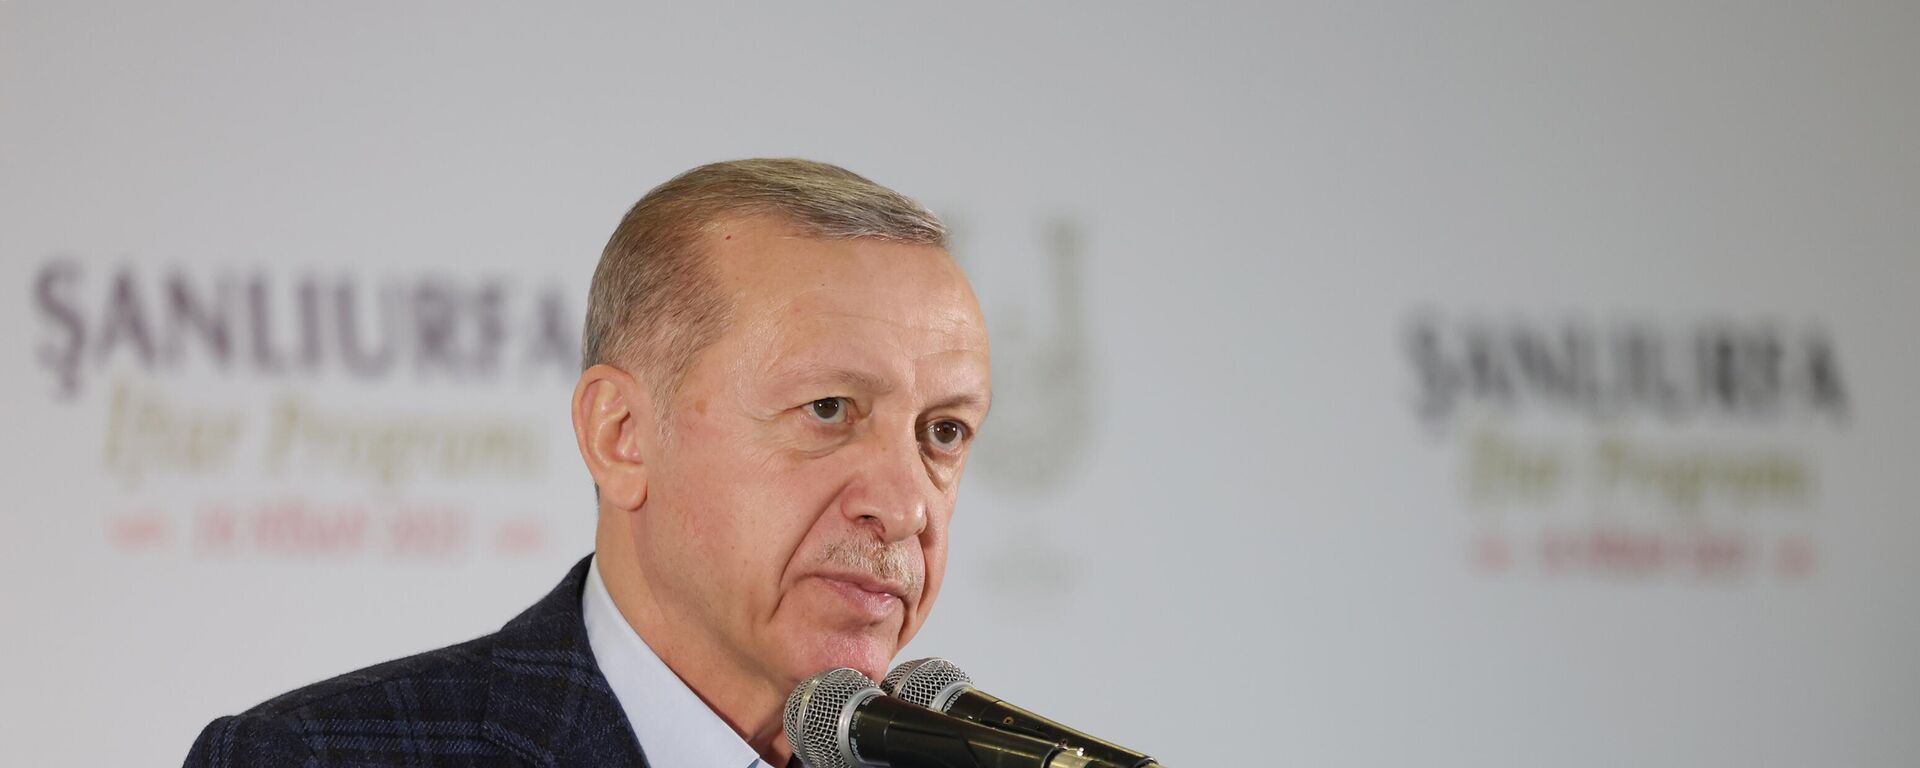 Cumhurbaşkanı Erdoğan, Türkiye'nin milli güvenliği hudutlarımızın dışında başlamaktadır. Bölgemiz sükunete kavuşmadan başımızı yastığa huzurla koyamayız dedi.  - Sputnik Türkiye, 1920, 16.04.2023